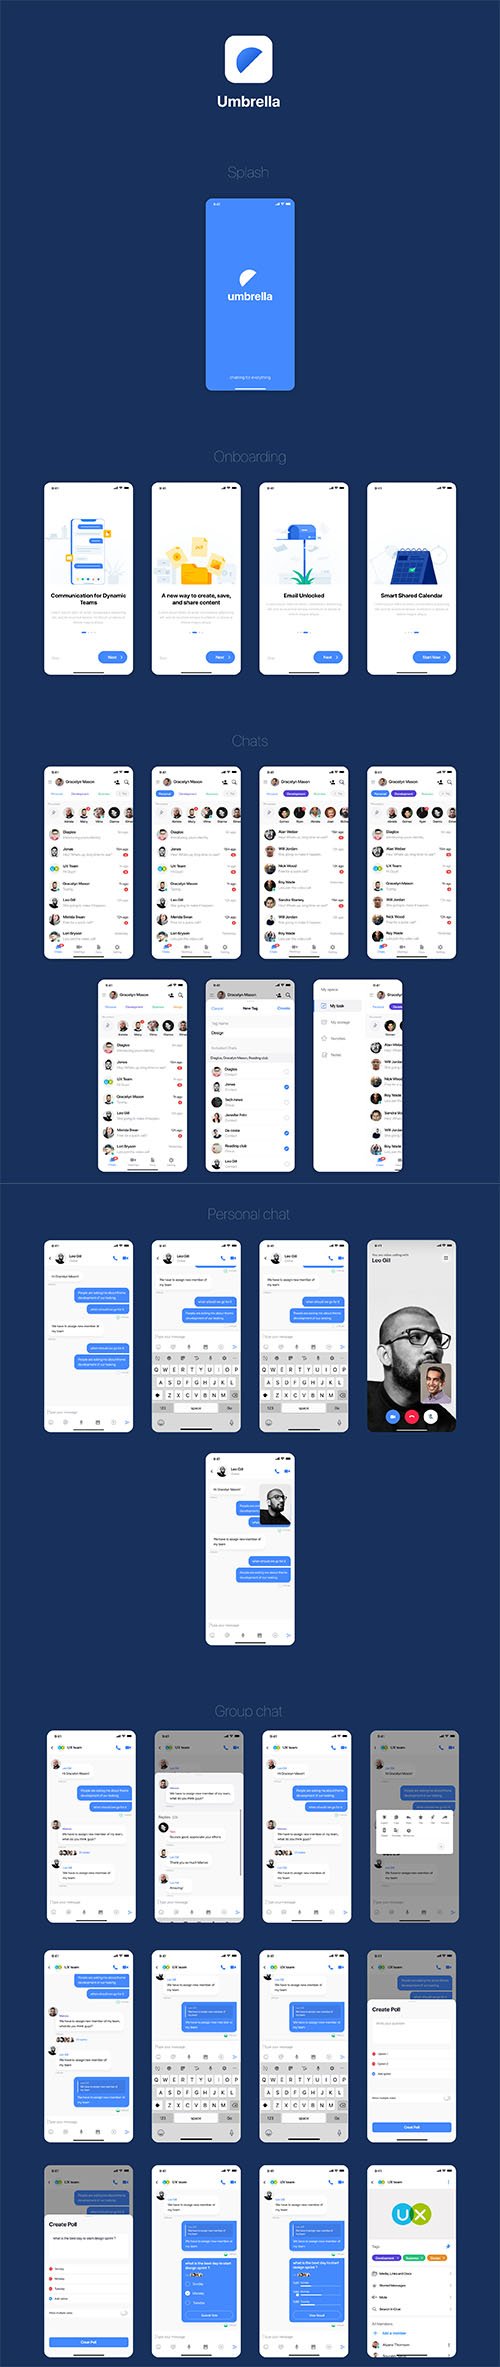 umbrella chat app UI kit - UI8